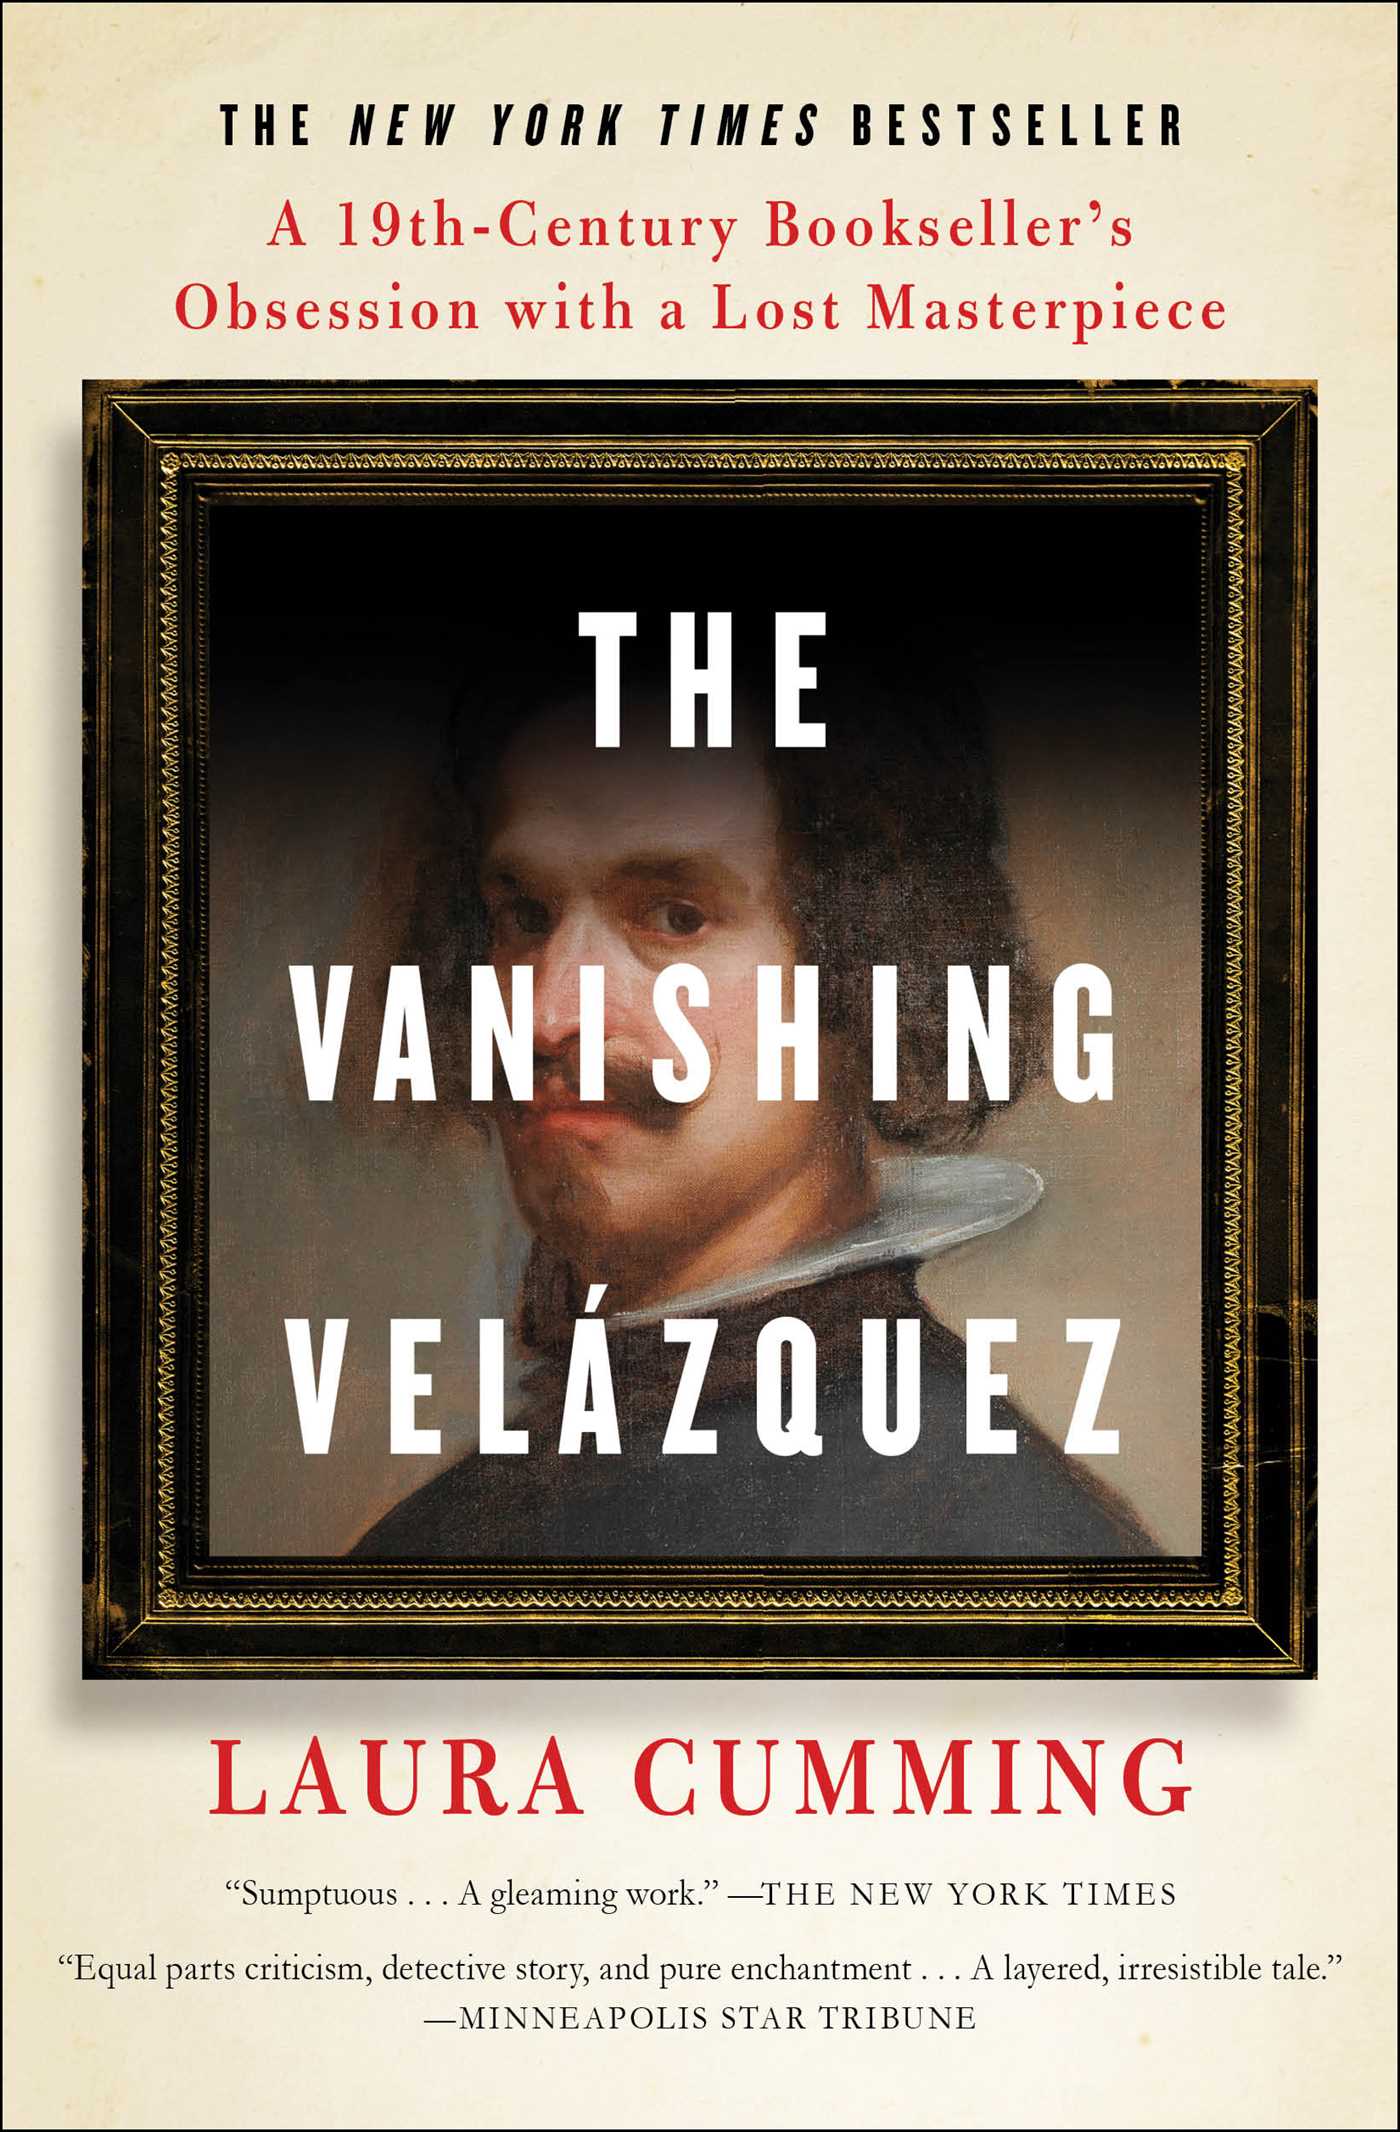 The Vanishing Velázquez